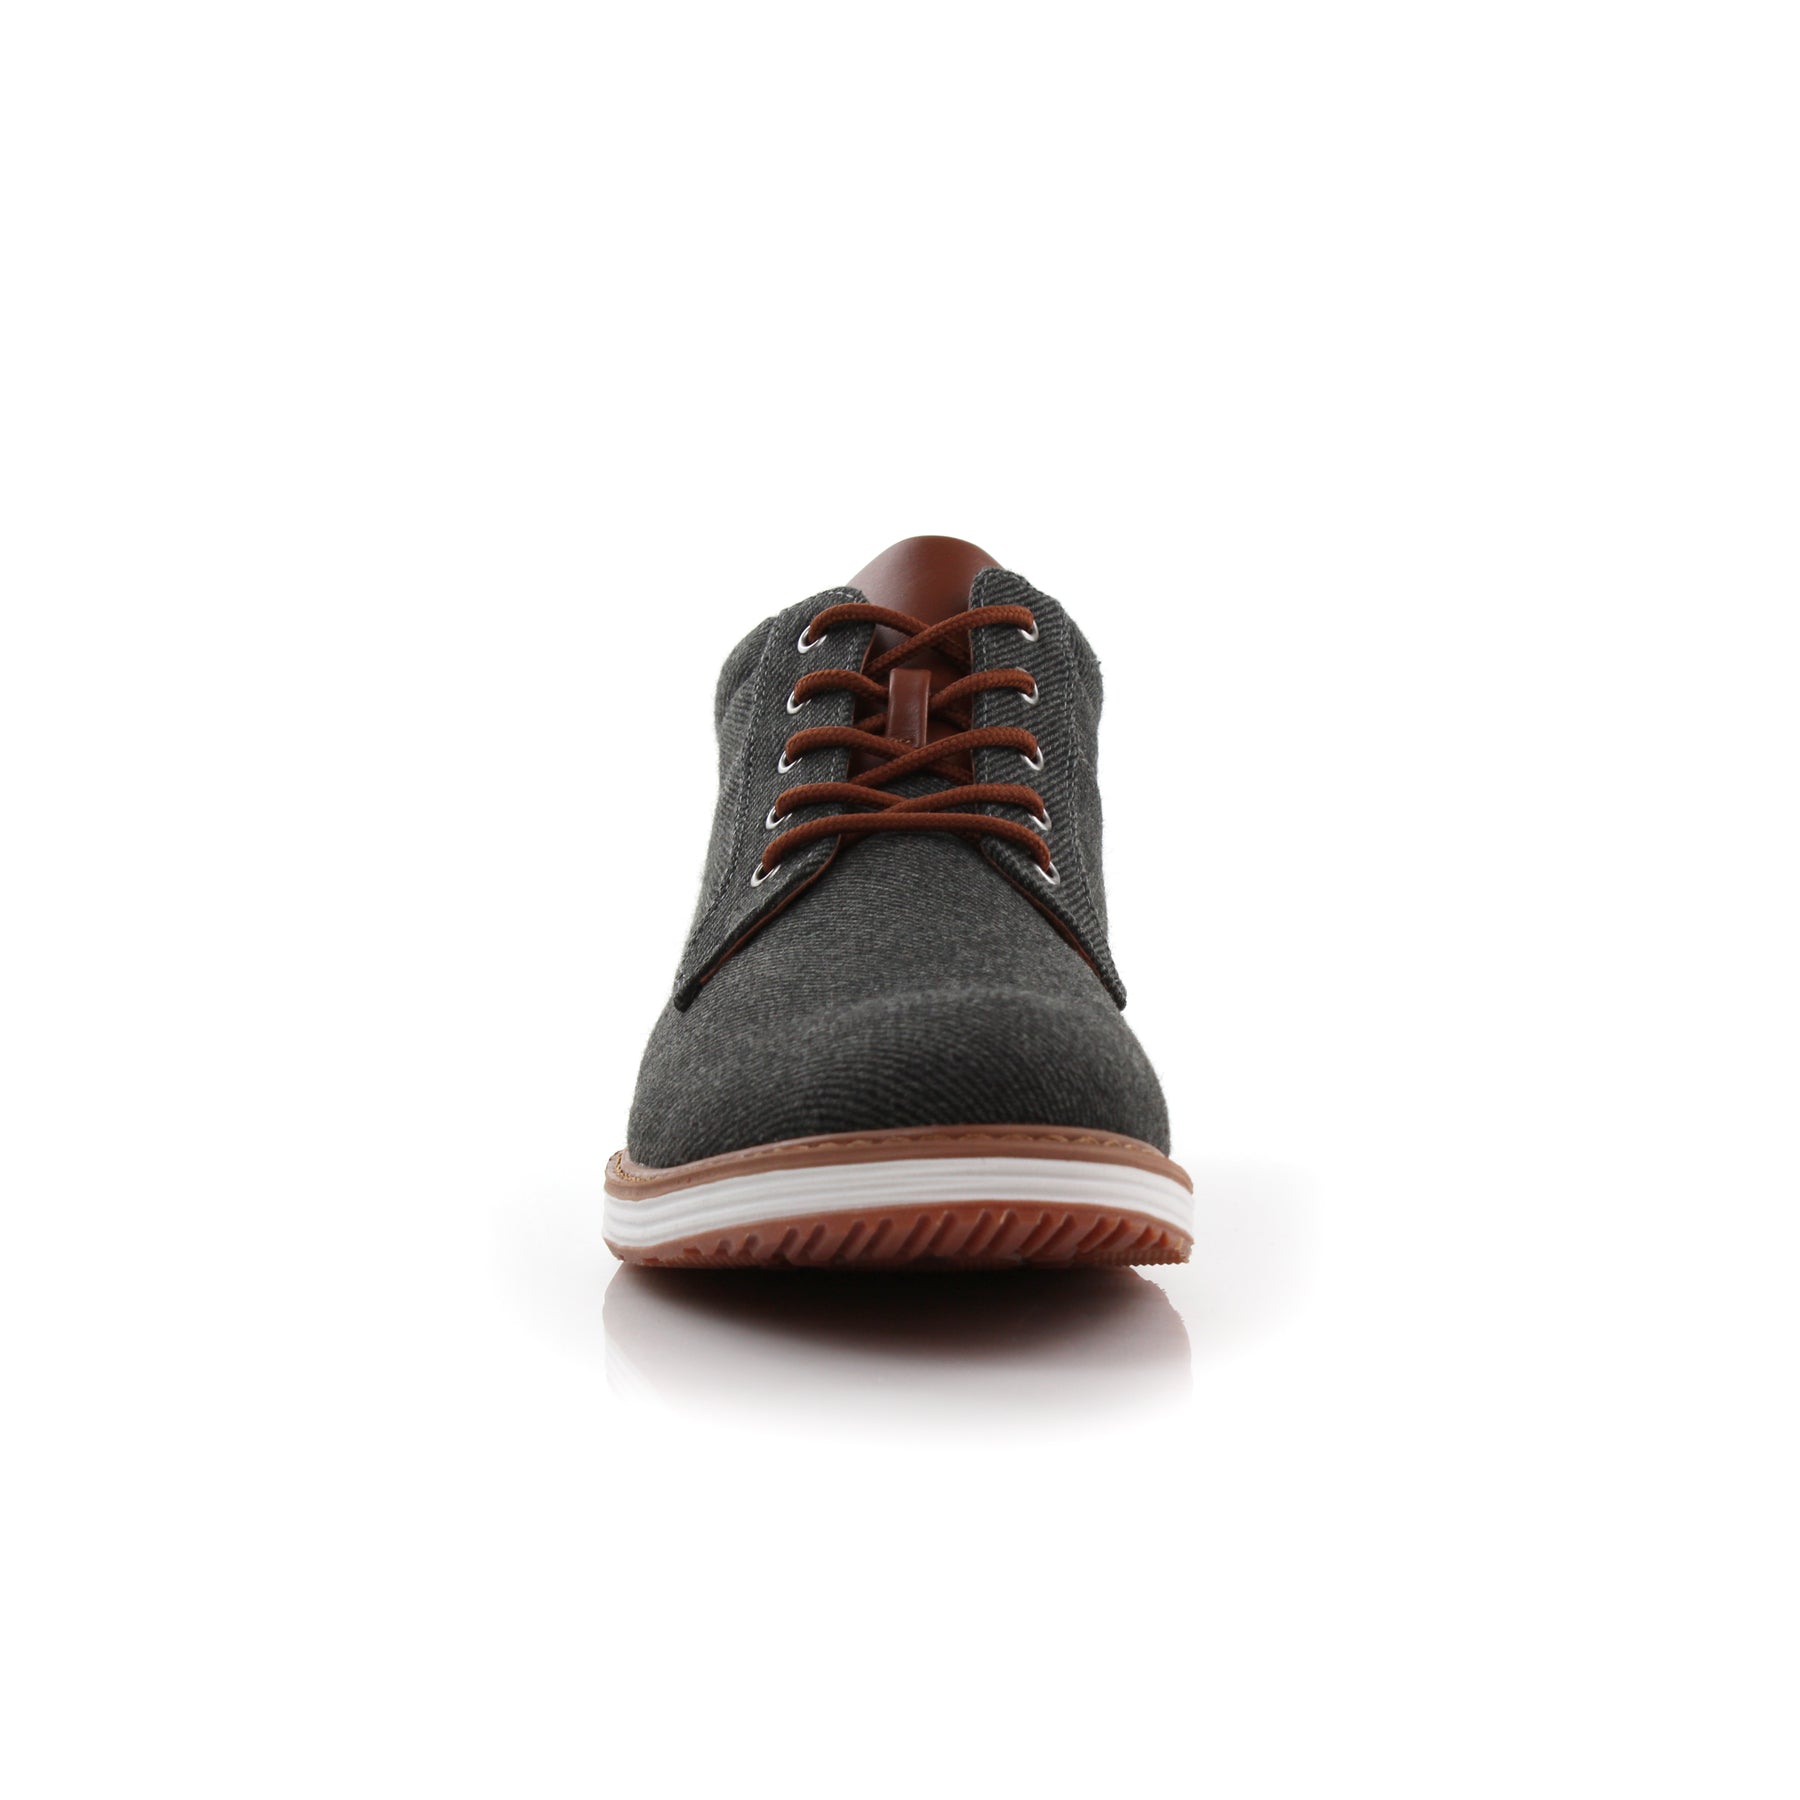 Denim Sneakers | Jax by Ferro Aldo | Conal Footwear | Front Angle View